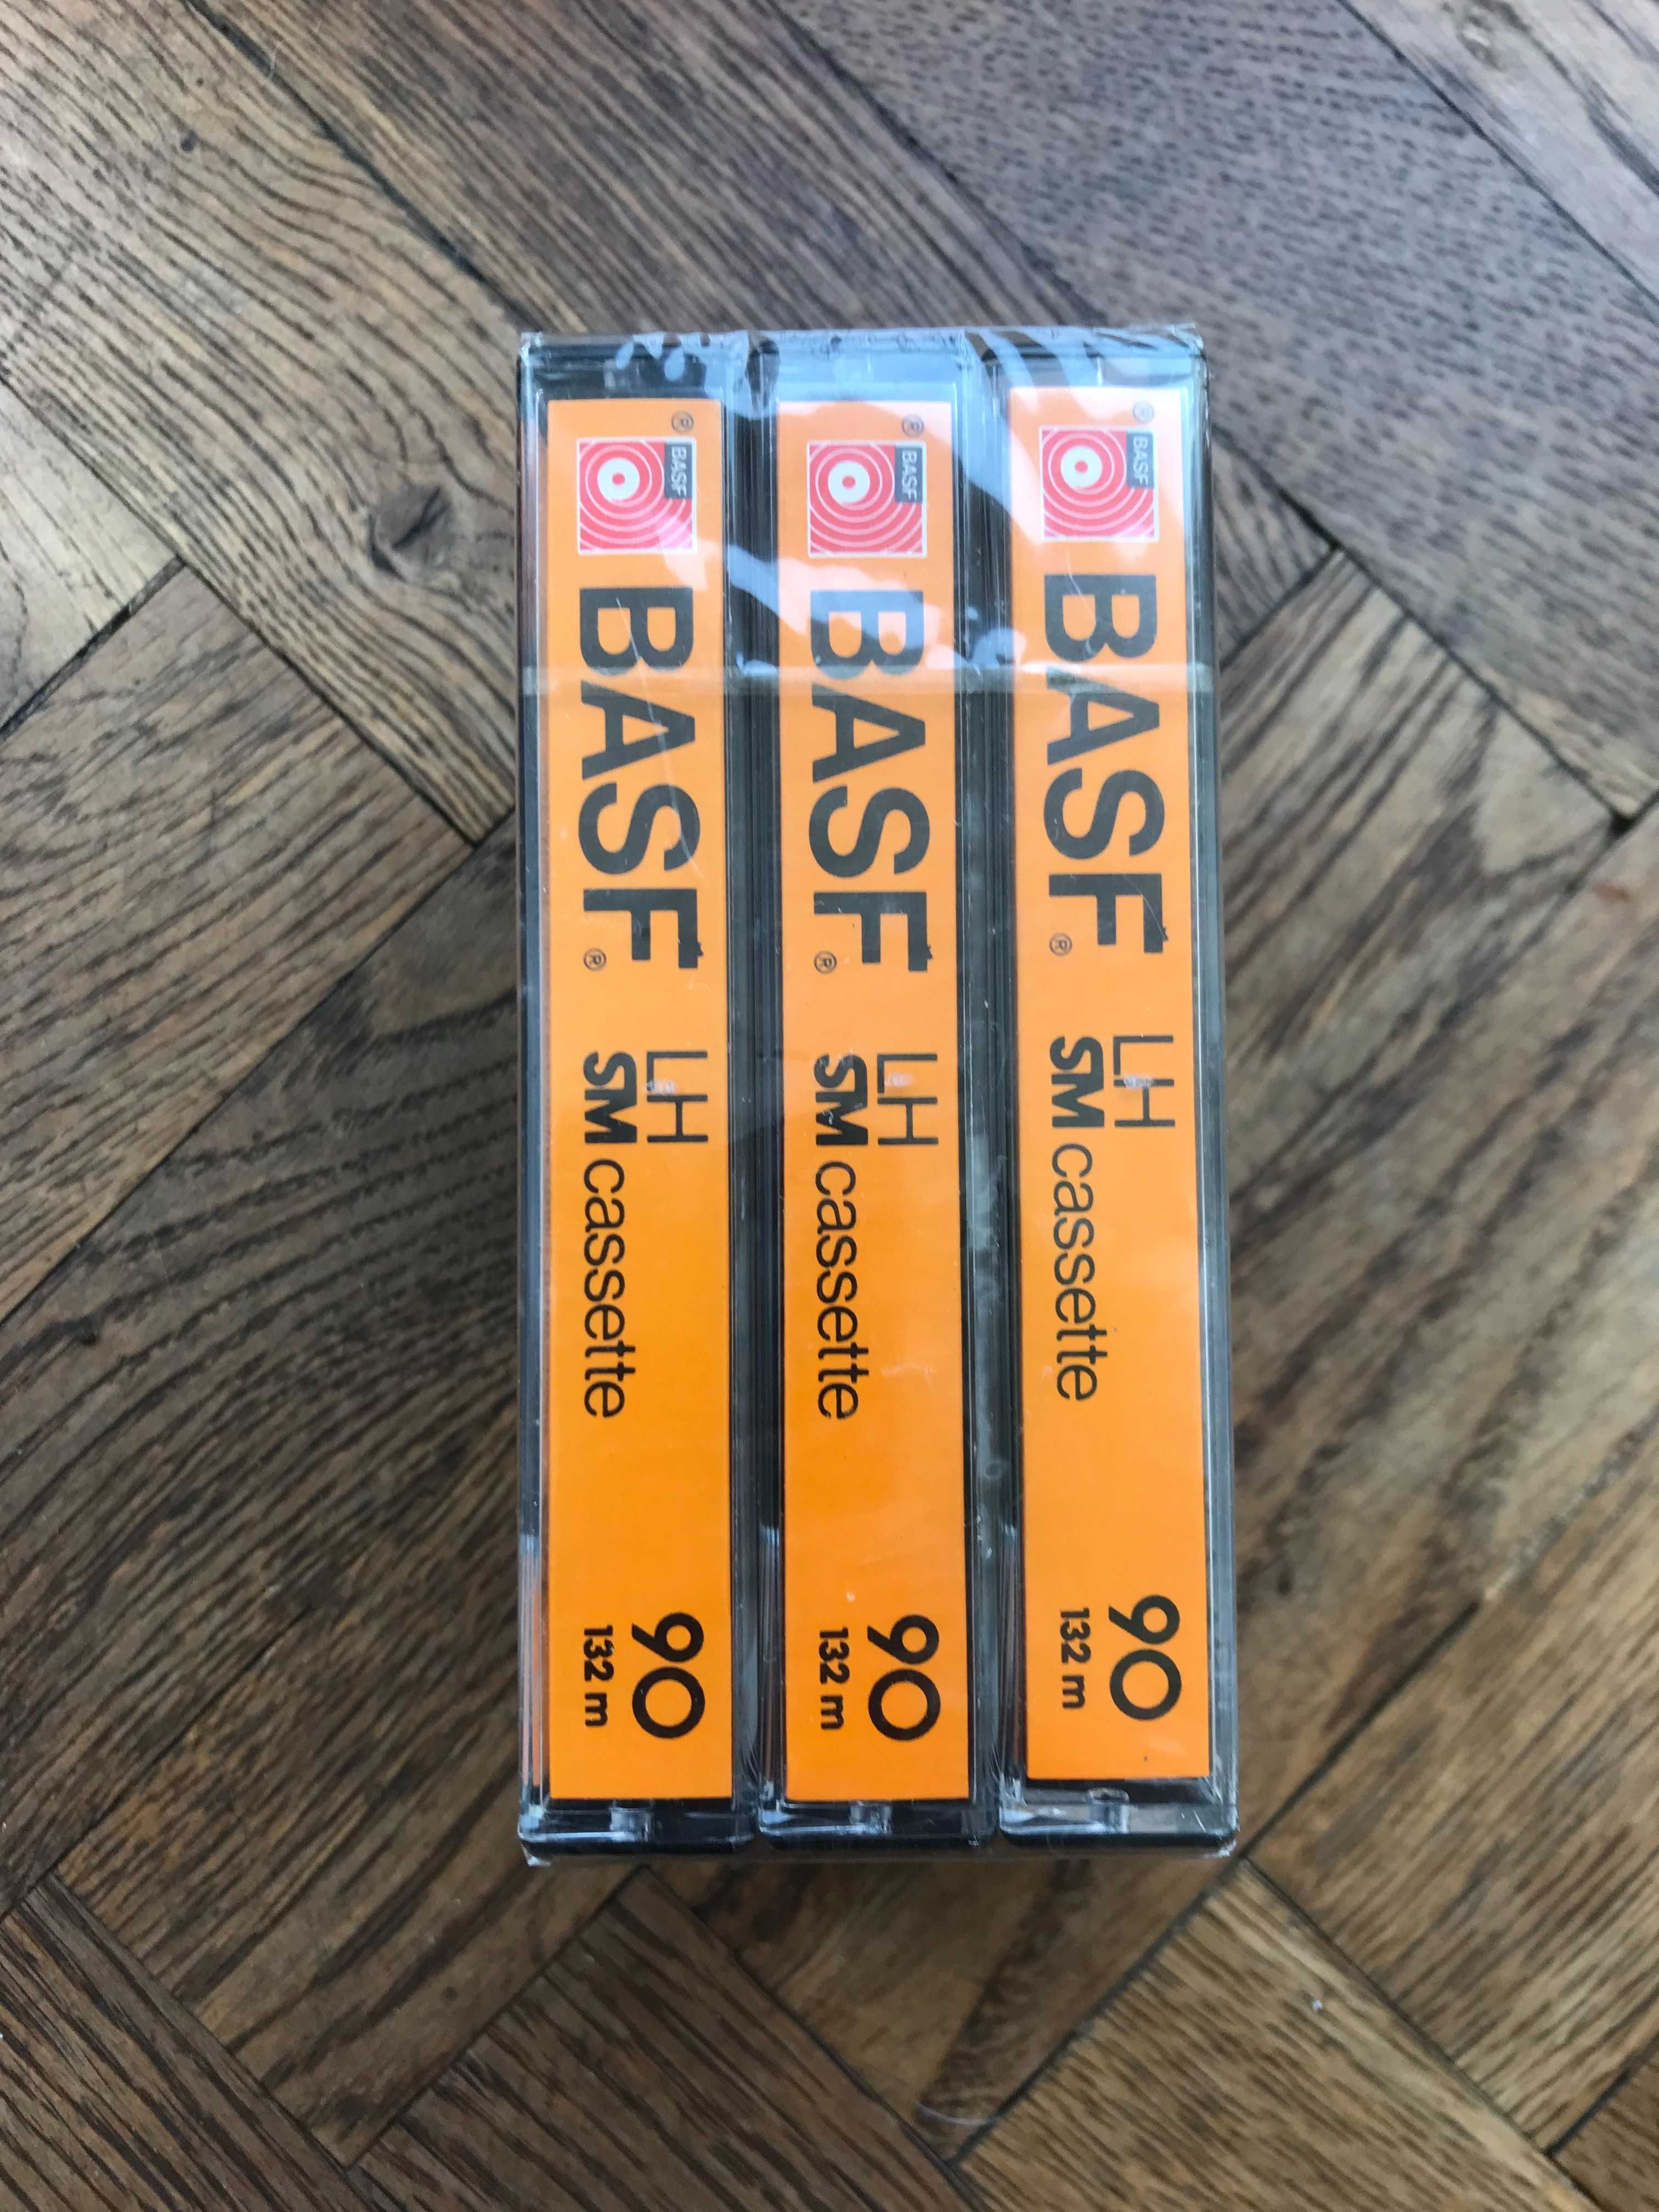 3szt BASF LH SM 90 EUR 77-80 nowe kasety magnetofonowe